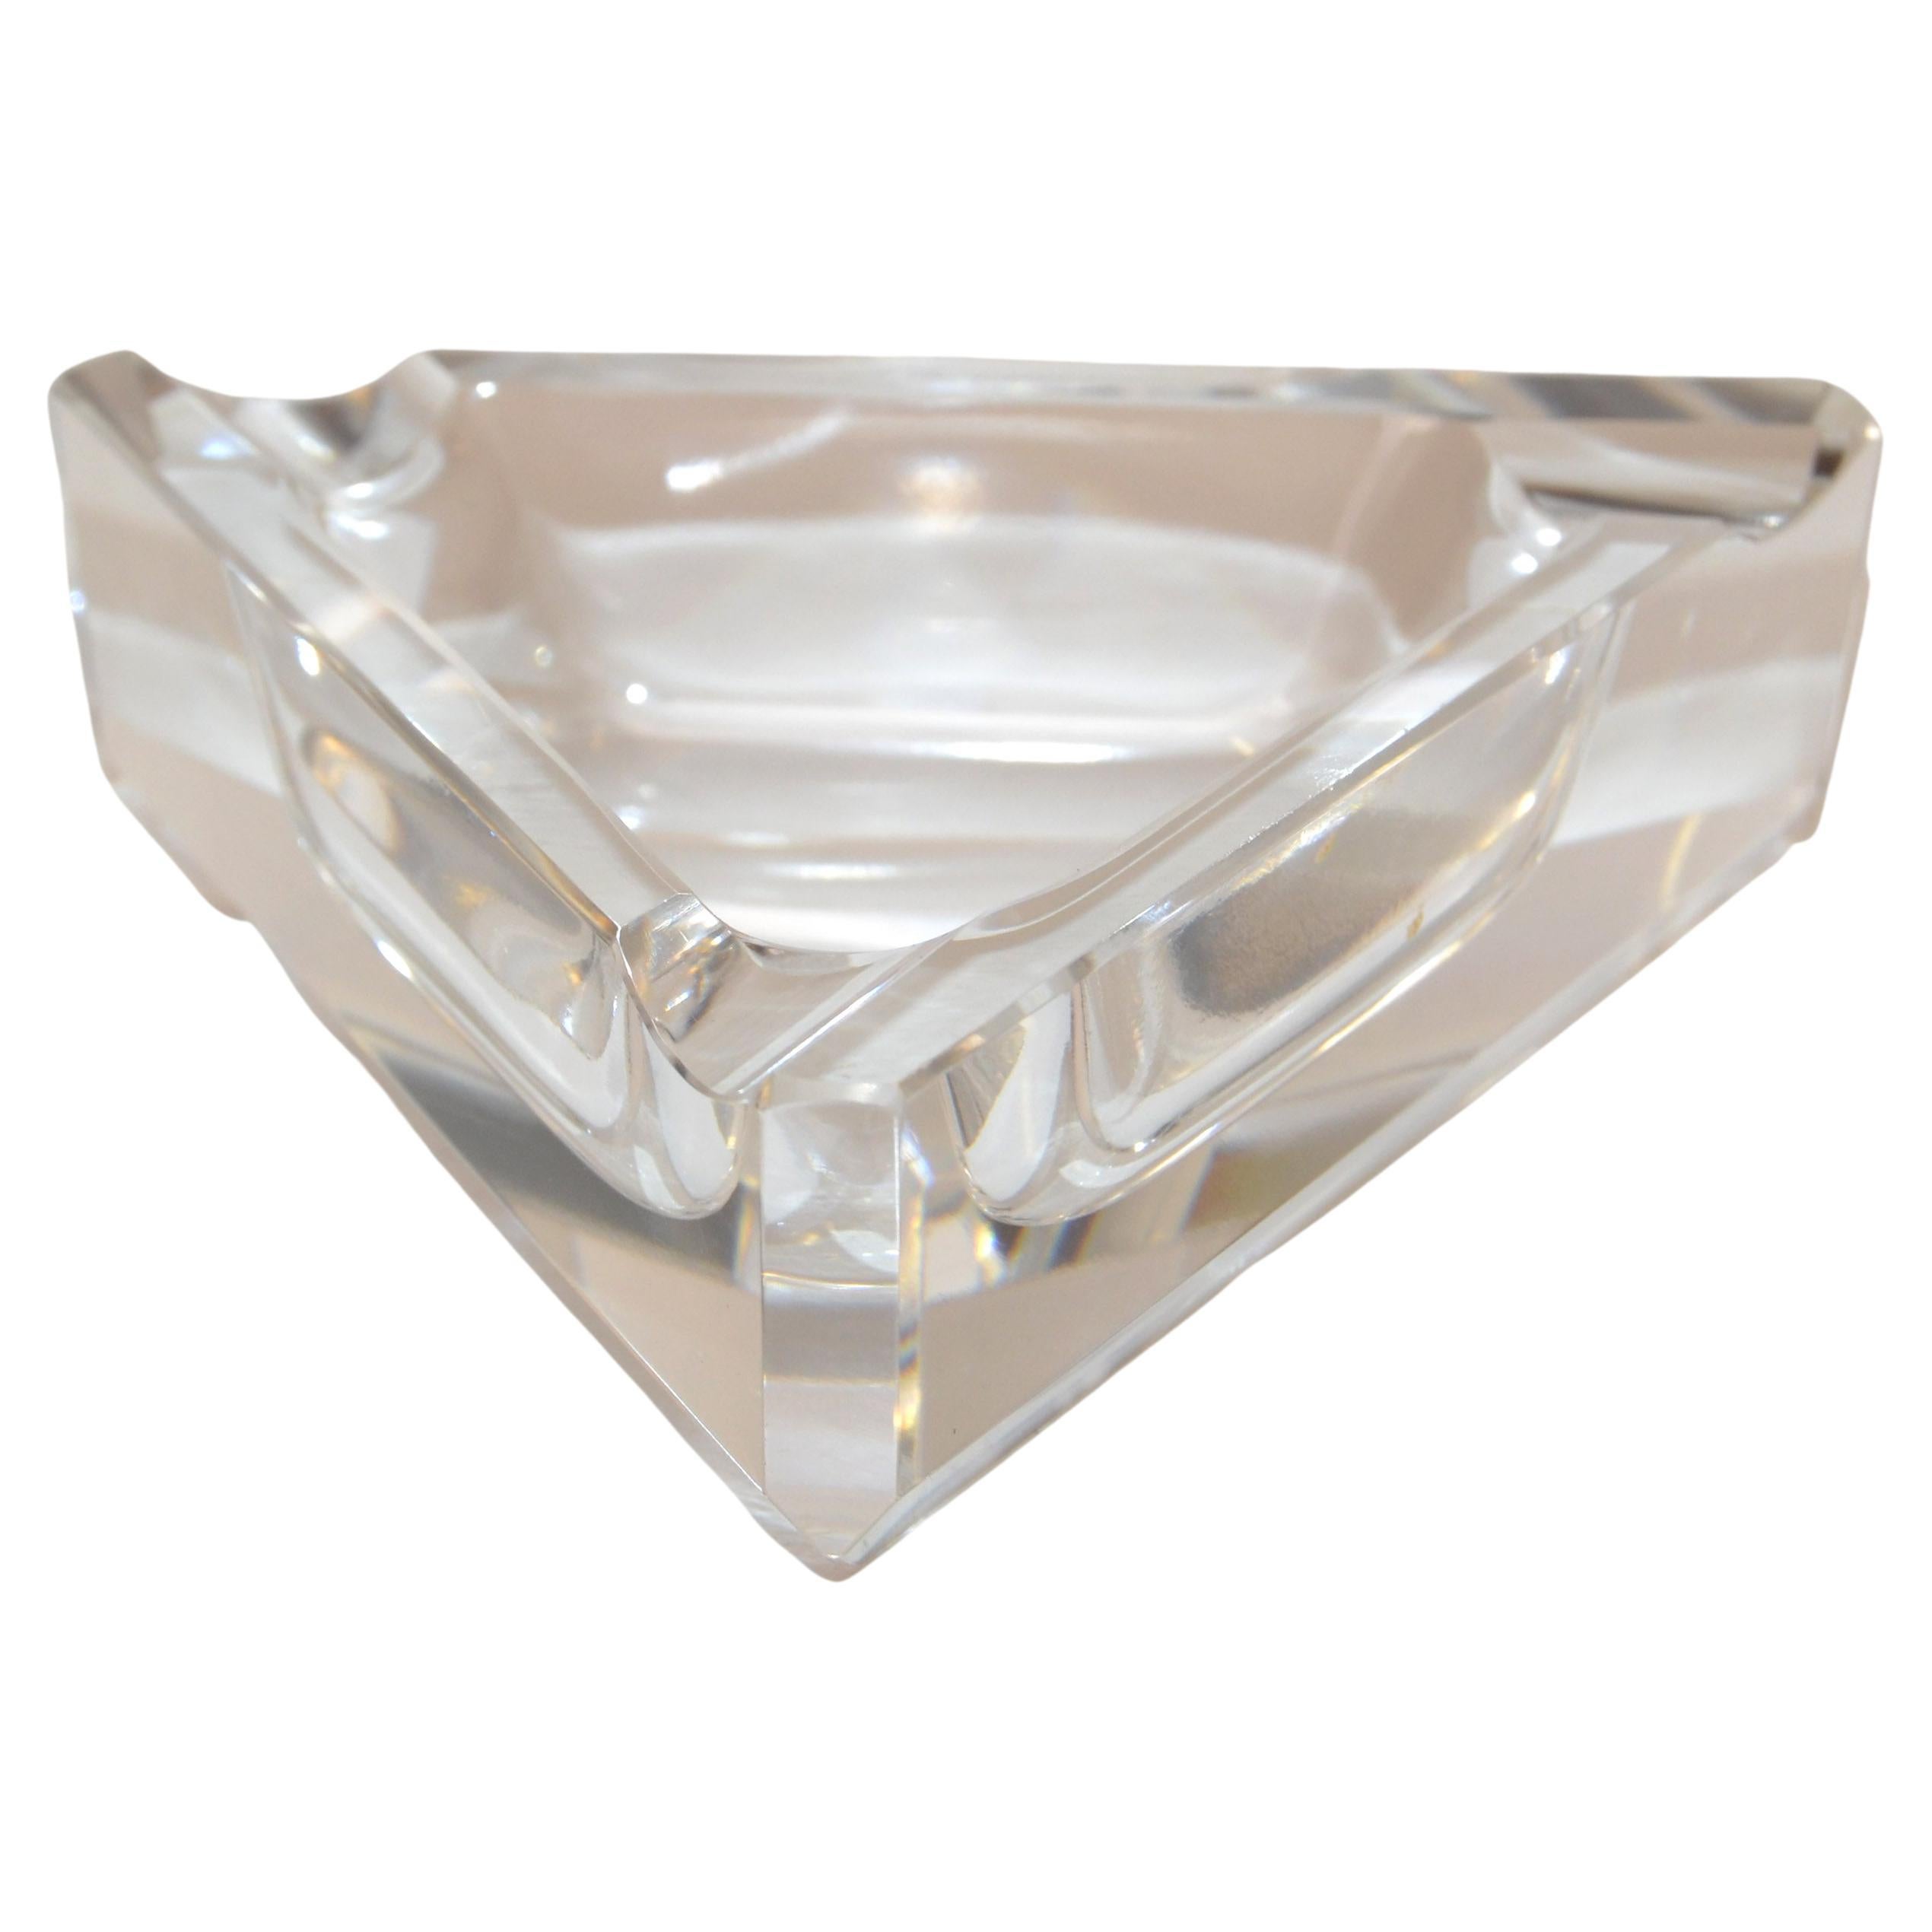 Ceska Bohemian Crystal Art Deco handgefertigtes facettiertes geometrisches Dreieck Aschenbecher.
Dieses schöne Stück ist in geschliffenem Kristall mit schönen Facetten geschliffen, um Prismen der Farbe zu schaffen, wenn Licht durch sie hindurchgeht.